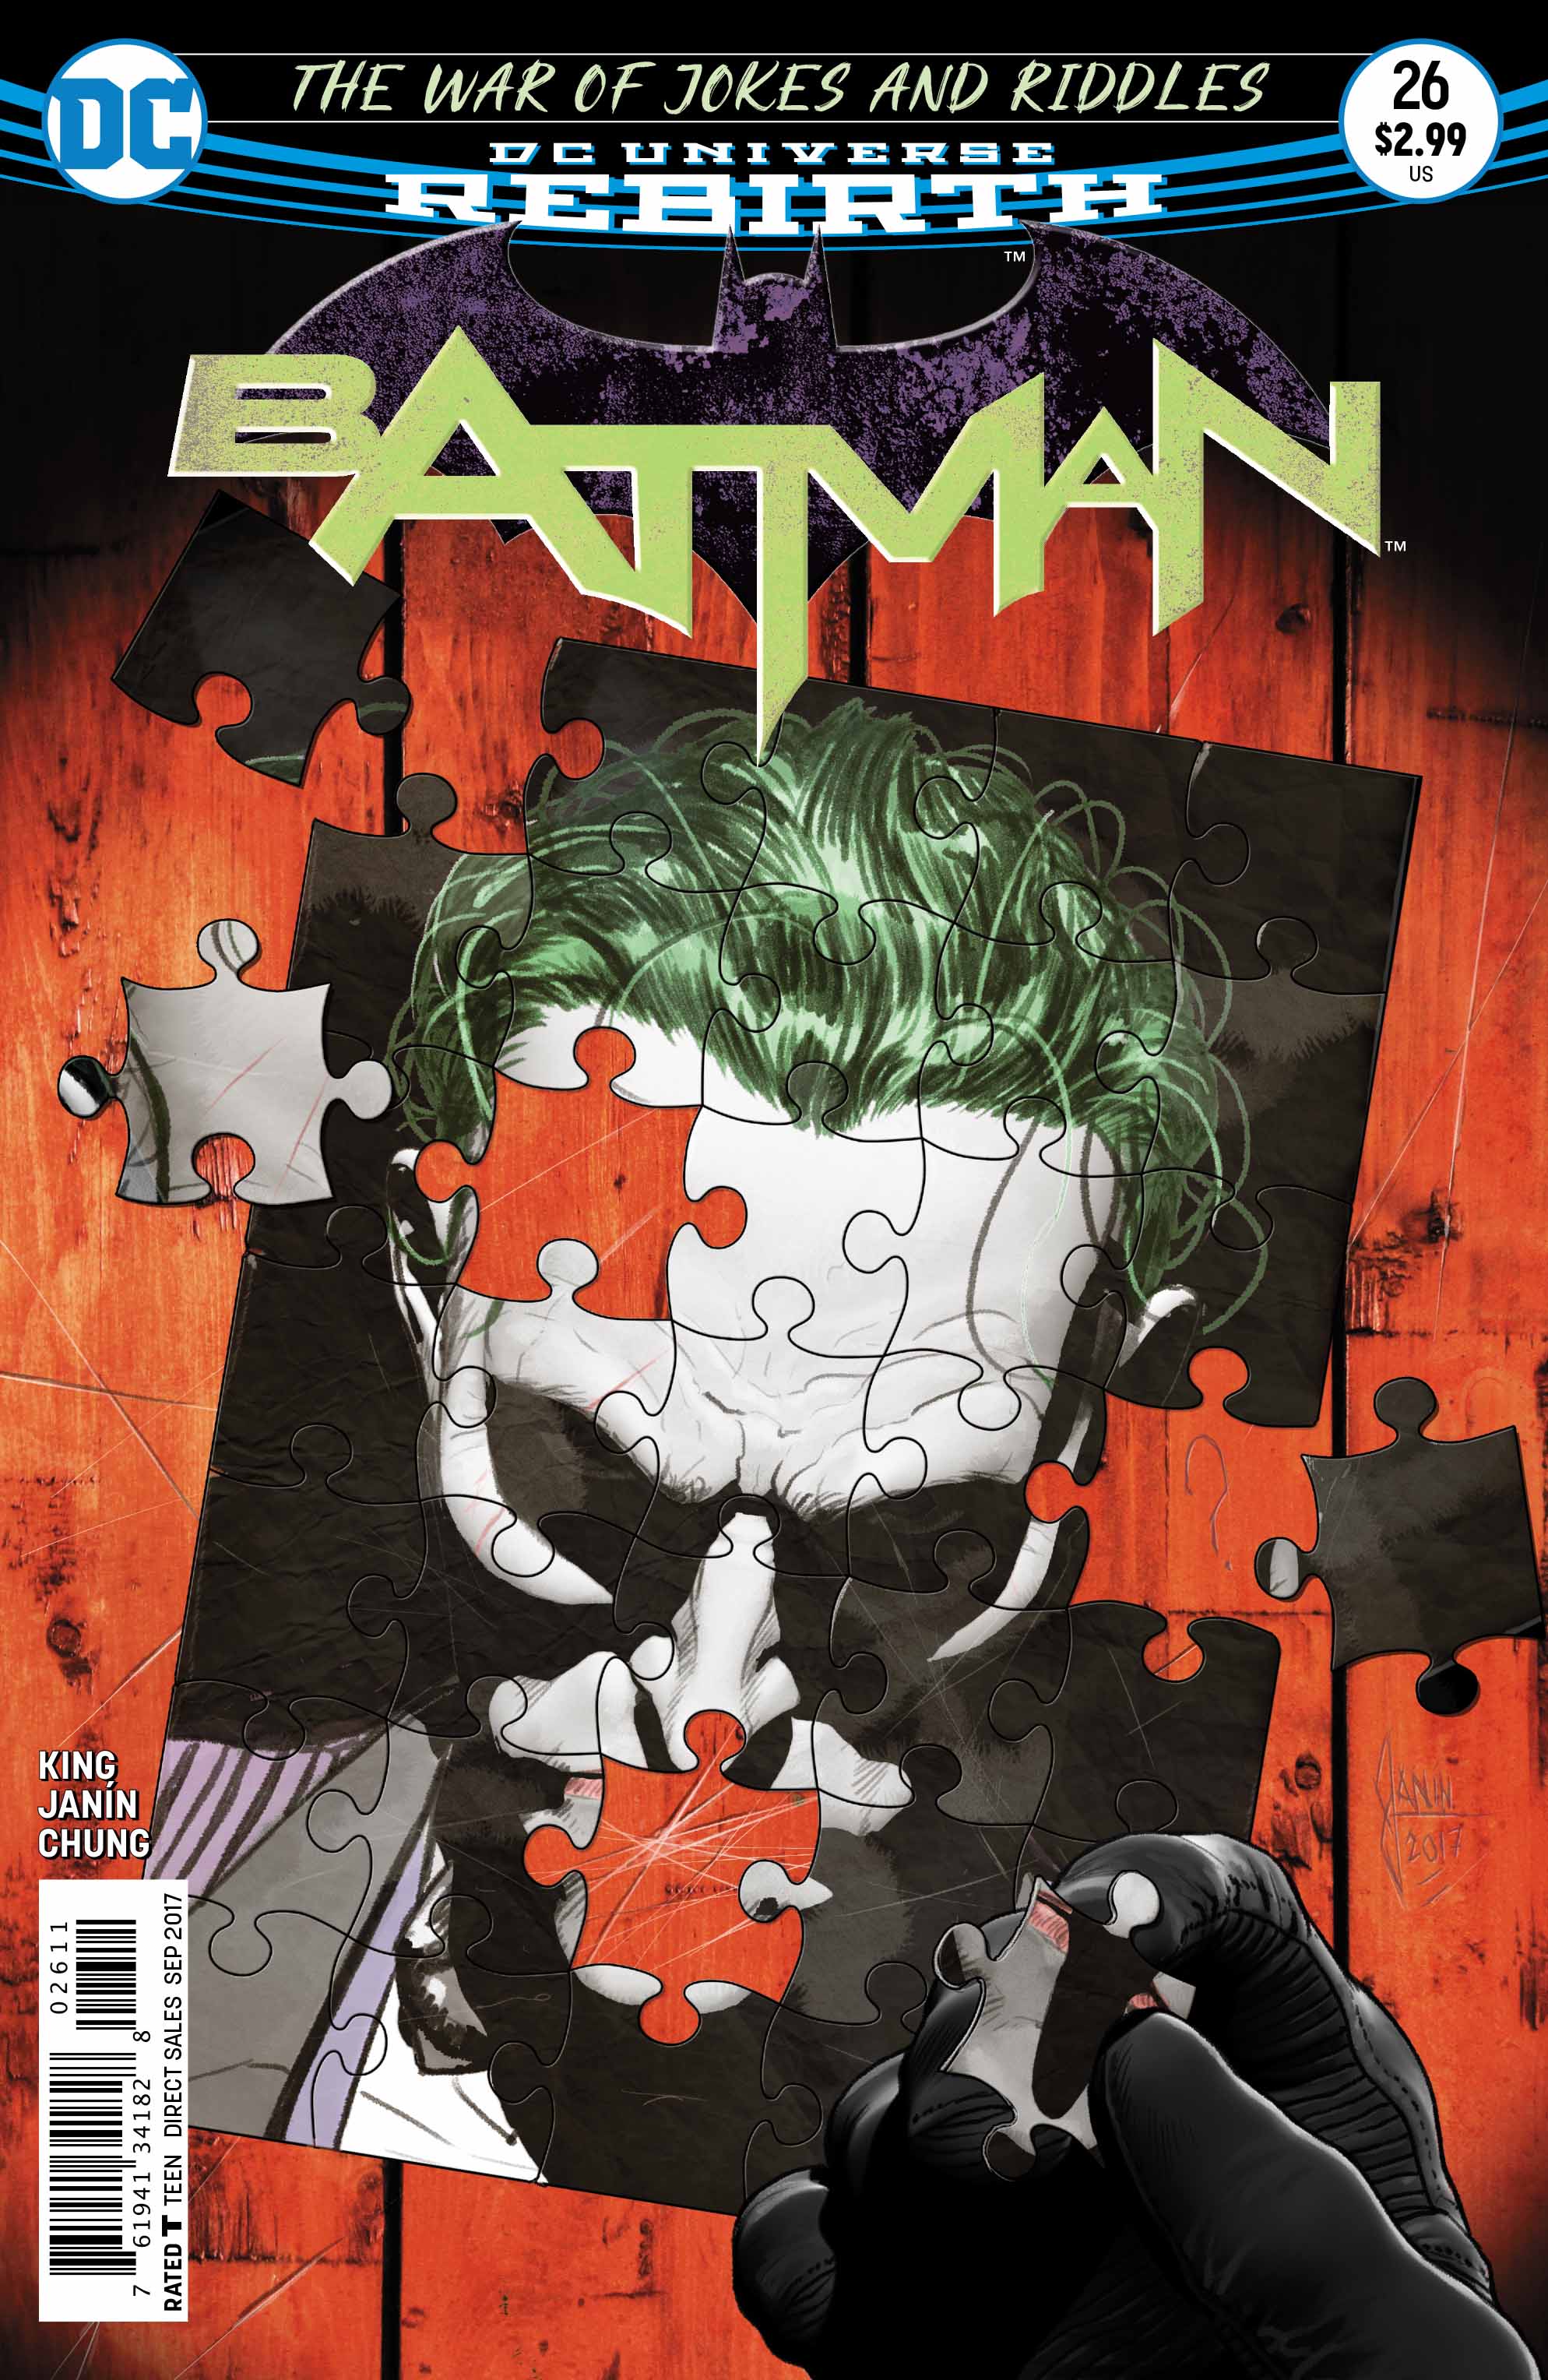 DC Preview: Batman #26